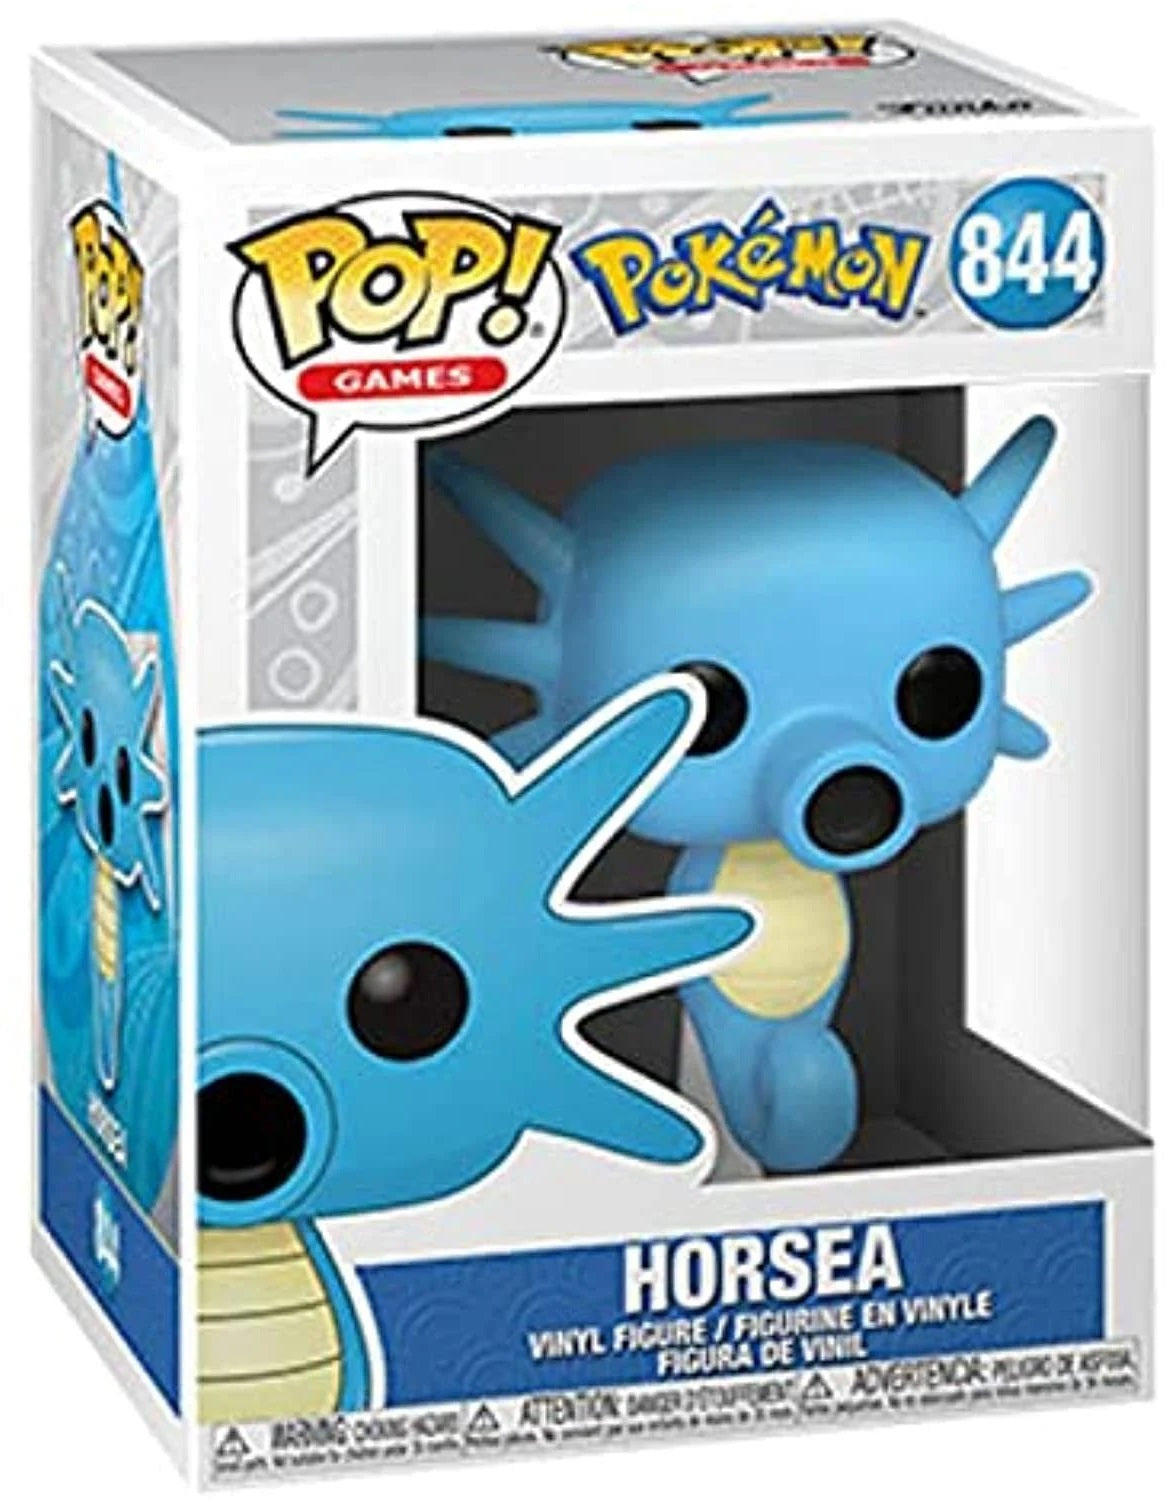 Horsea POP! (Pokemon) 844